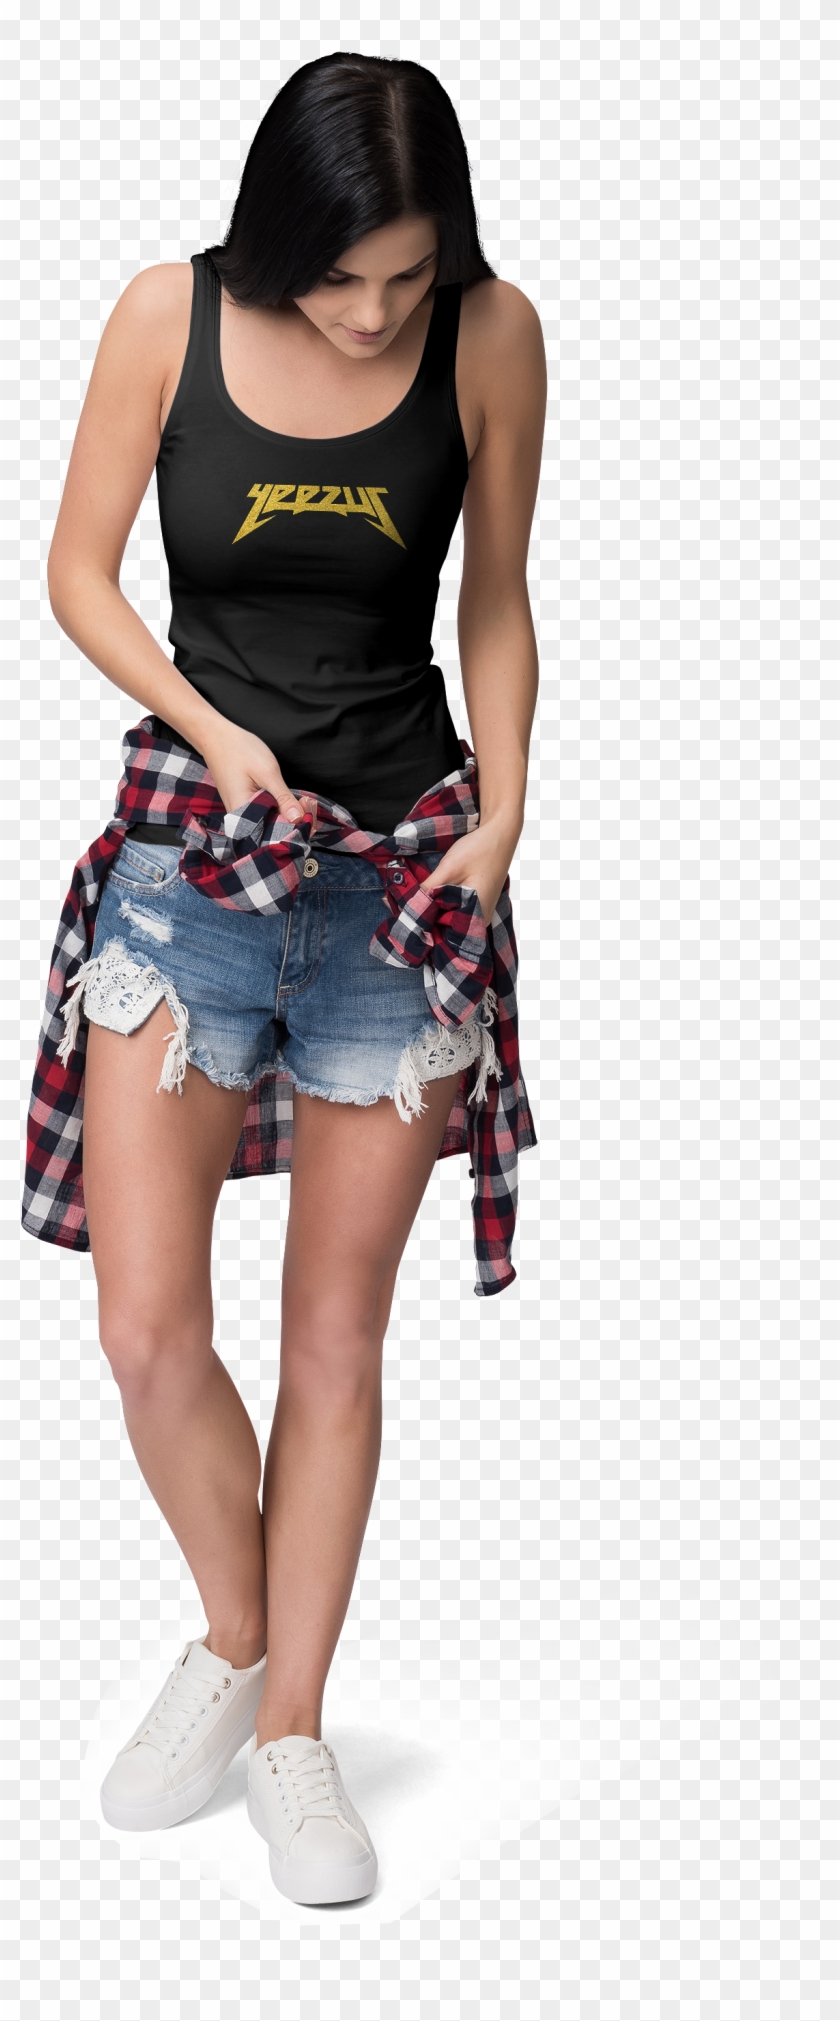 Yeezus Women's Tank Top, Yeezus Clothes - Girl Clipart #5740866